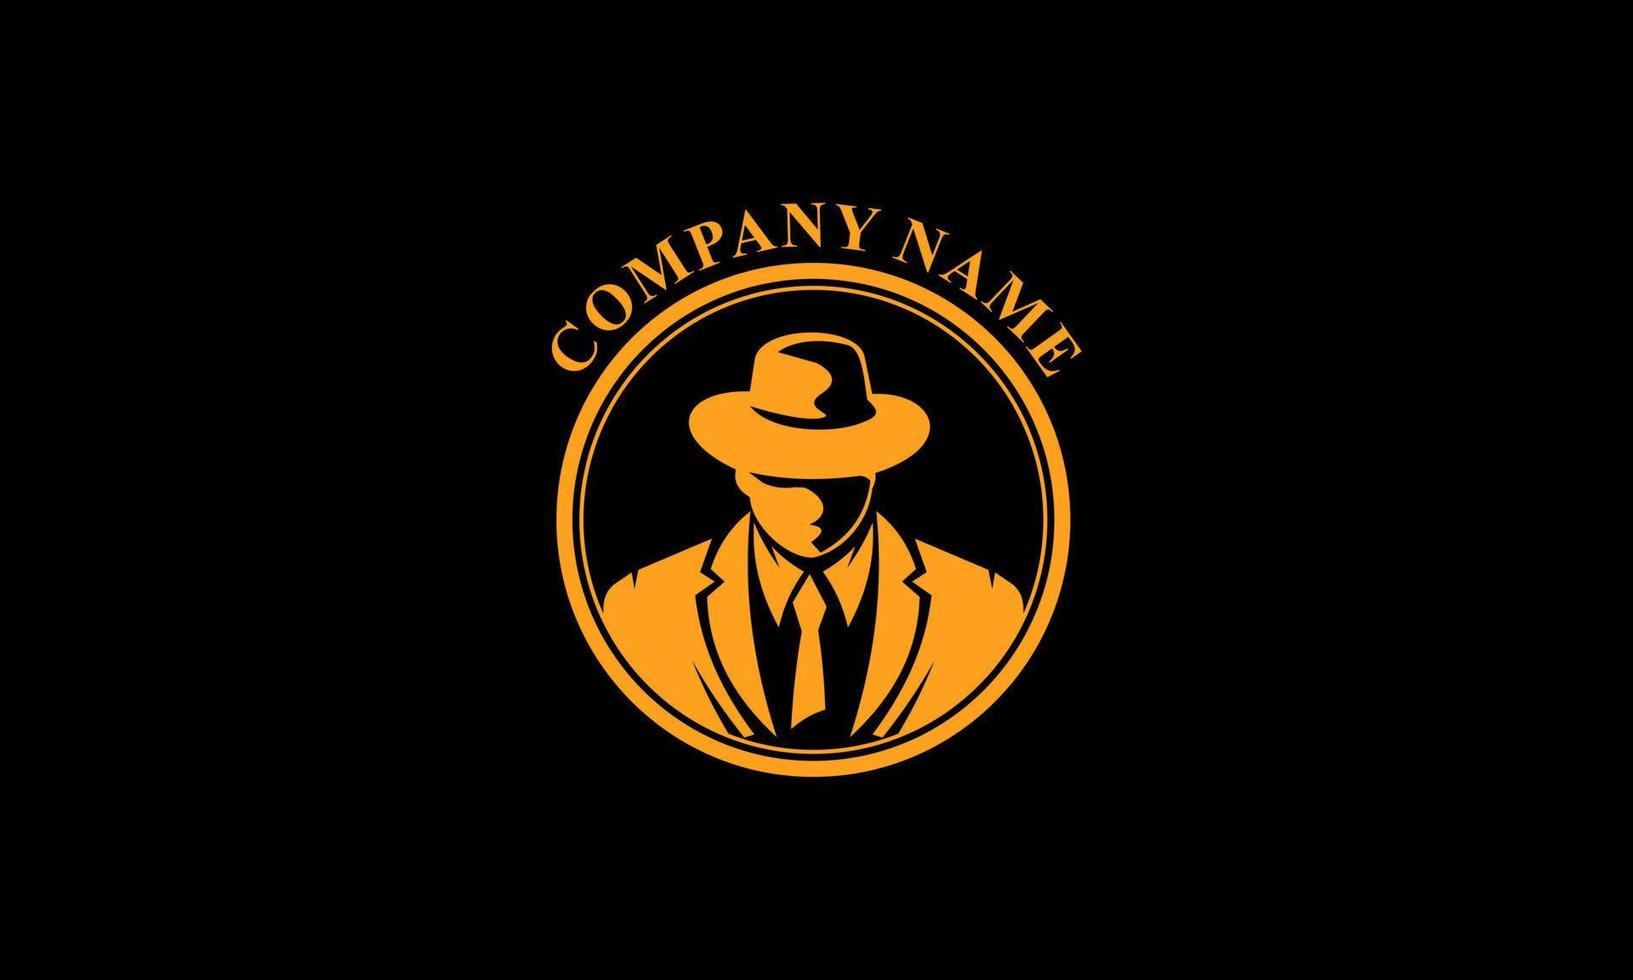 emblemi del logo della mafia con la testa degli uomini della siluetta astratta del carattere nel cappello. illustrazione vettoriale d'epoca